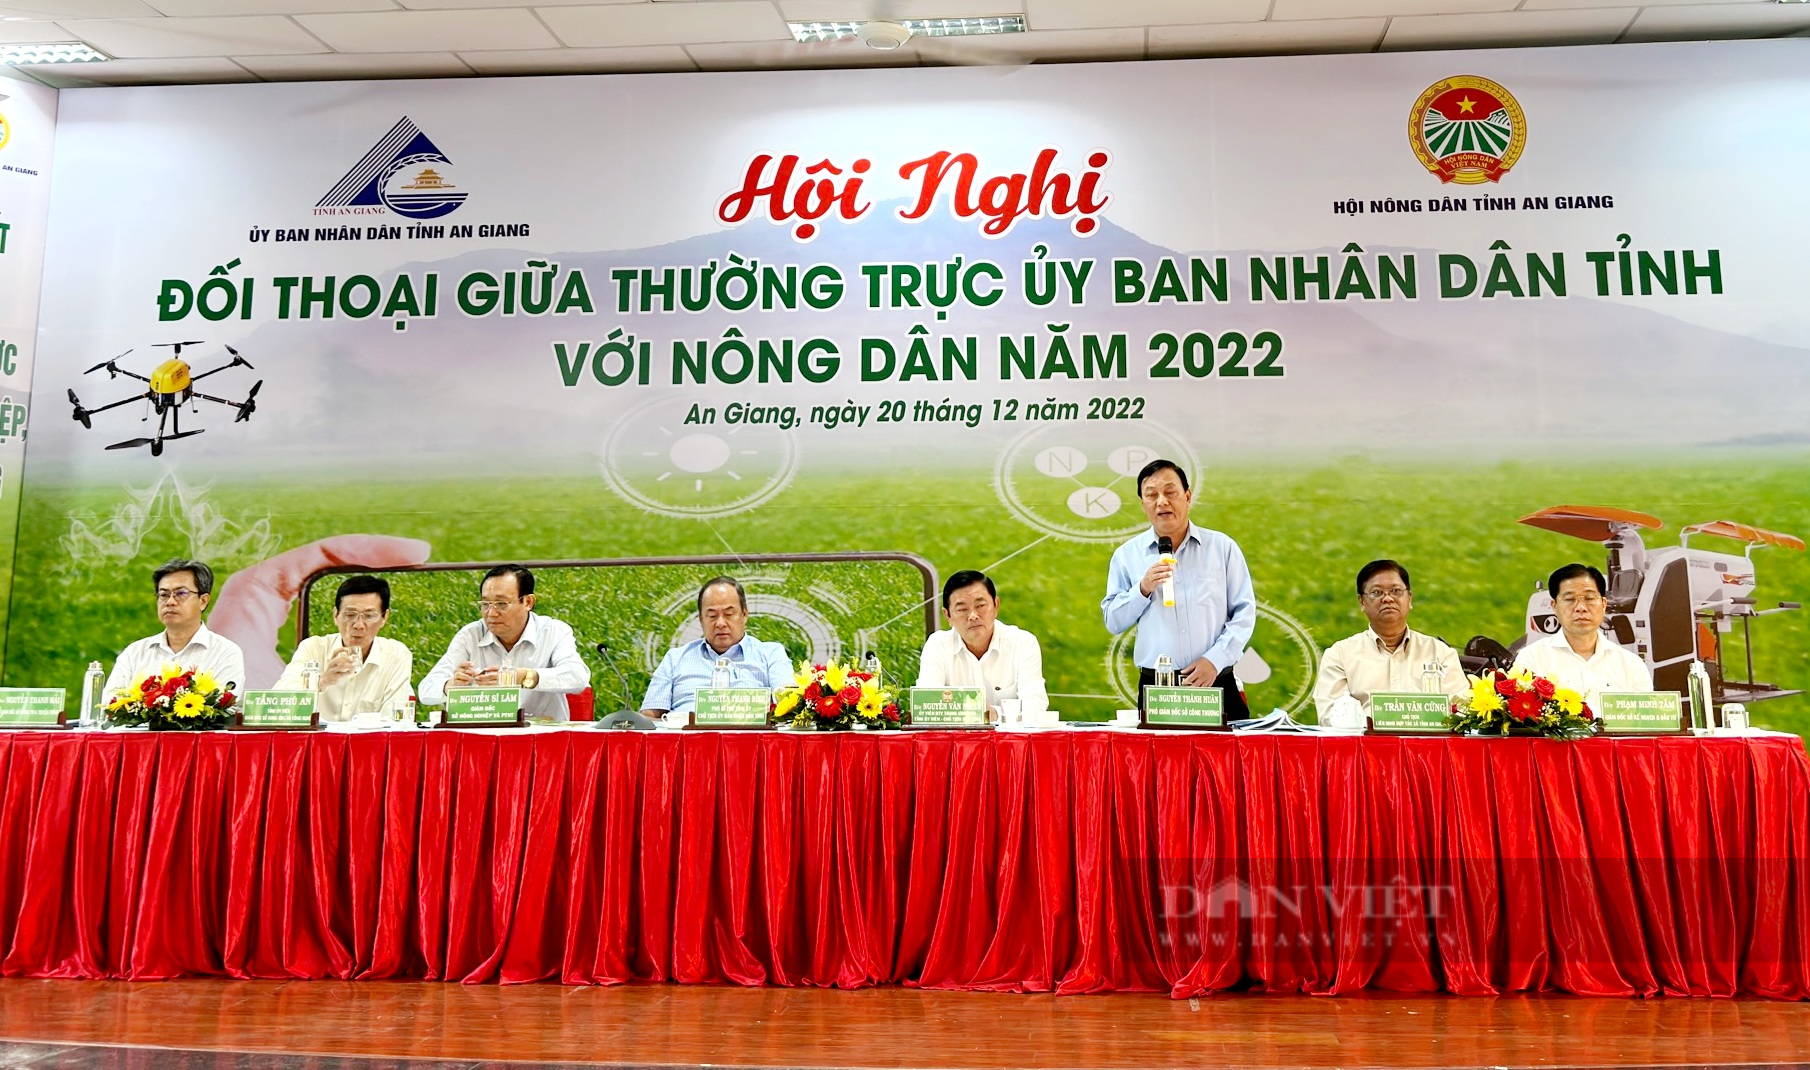 Đối thoại với nông dân, Chủ tịch UBND tỉnh An Giang đề nghị nông dân tham gia vào các mô hình kinh tế hợp tác - Ảnh 1.